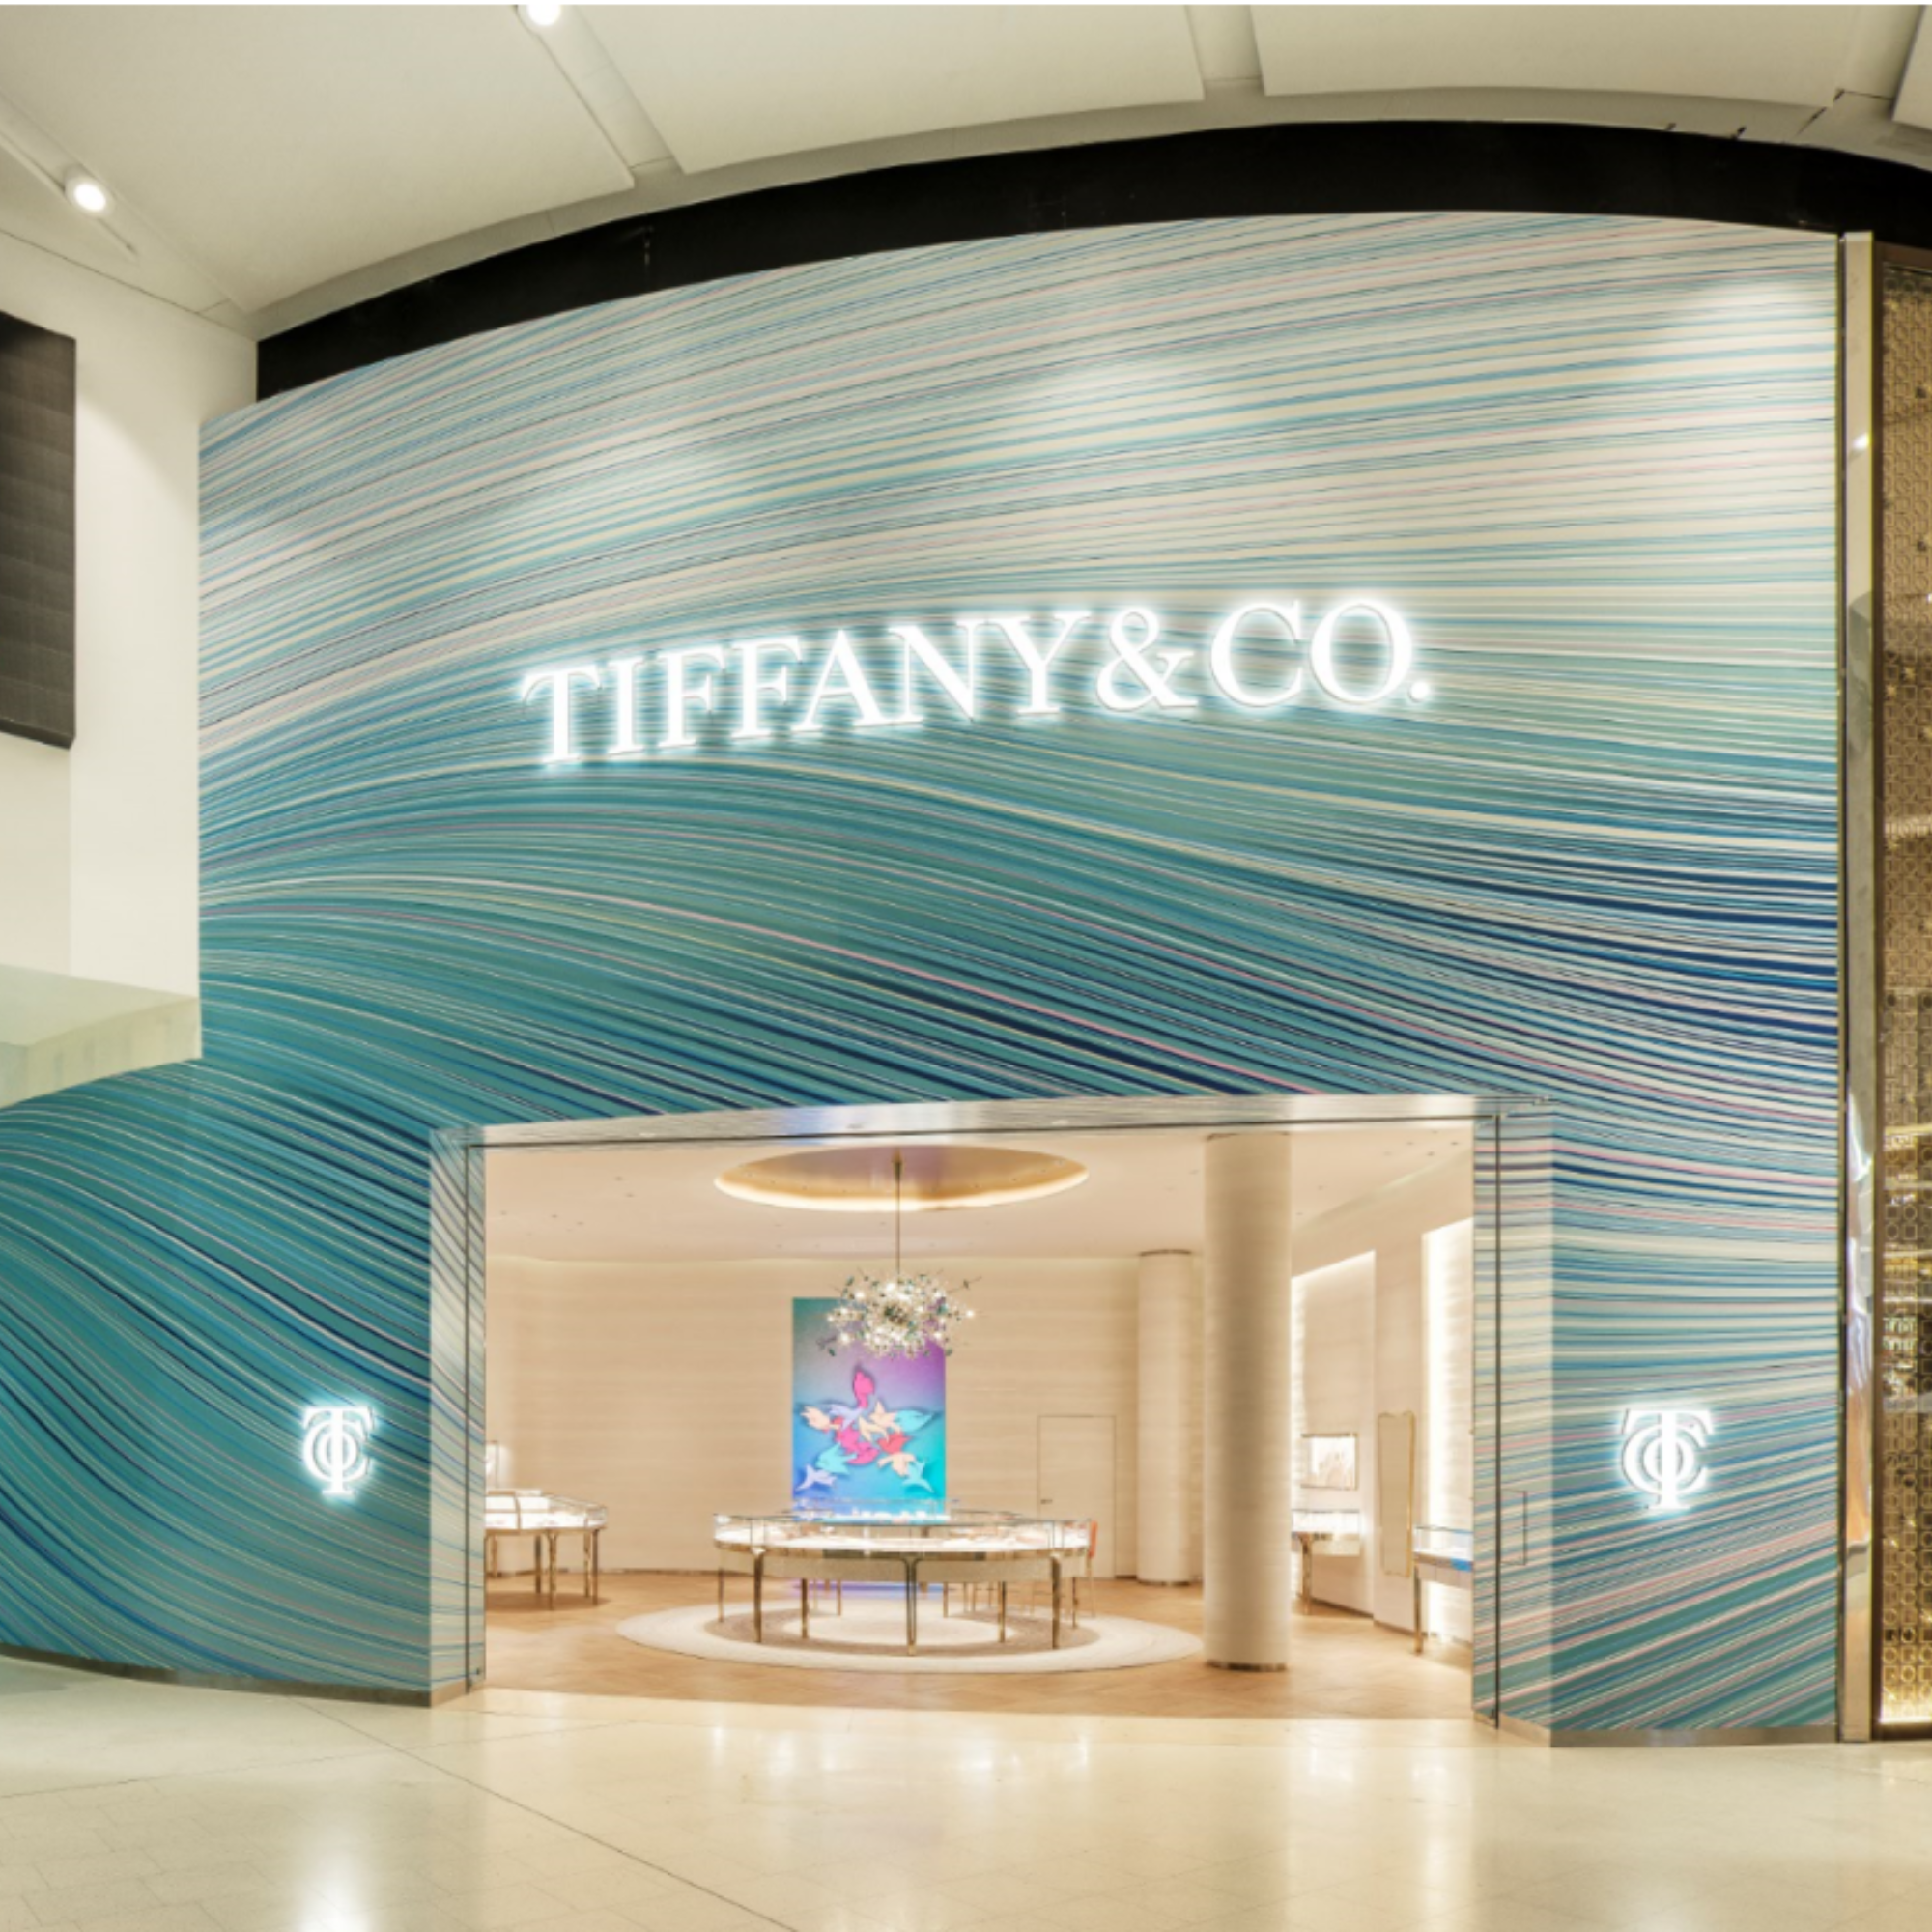 Tiffany & Co. Sydney Airport Tiffany & Co. Mascot 1800 731 131